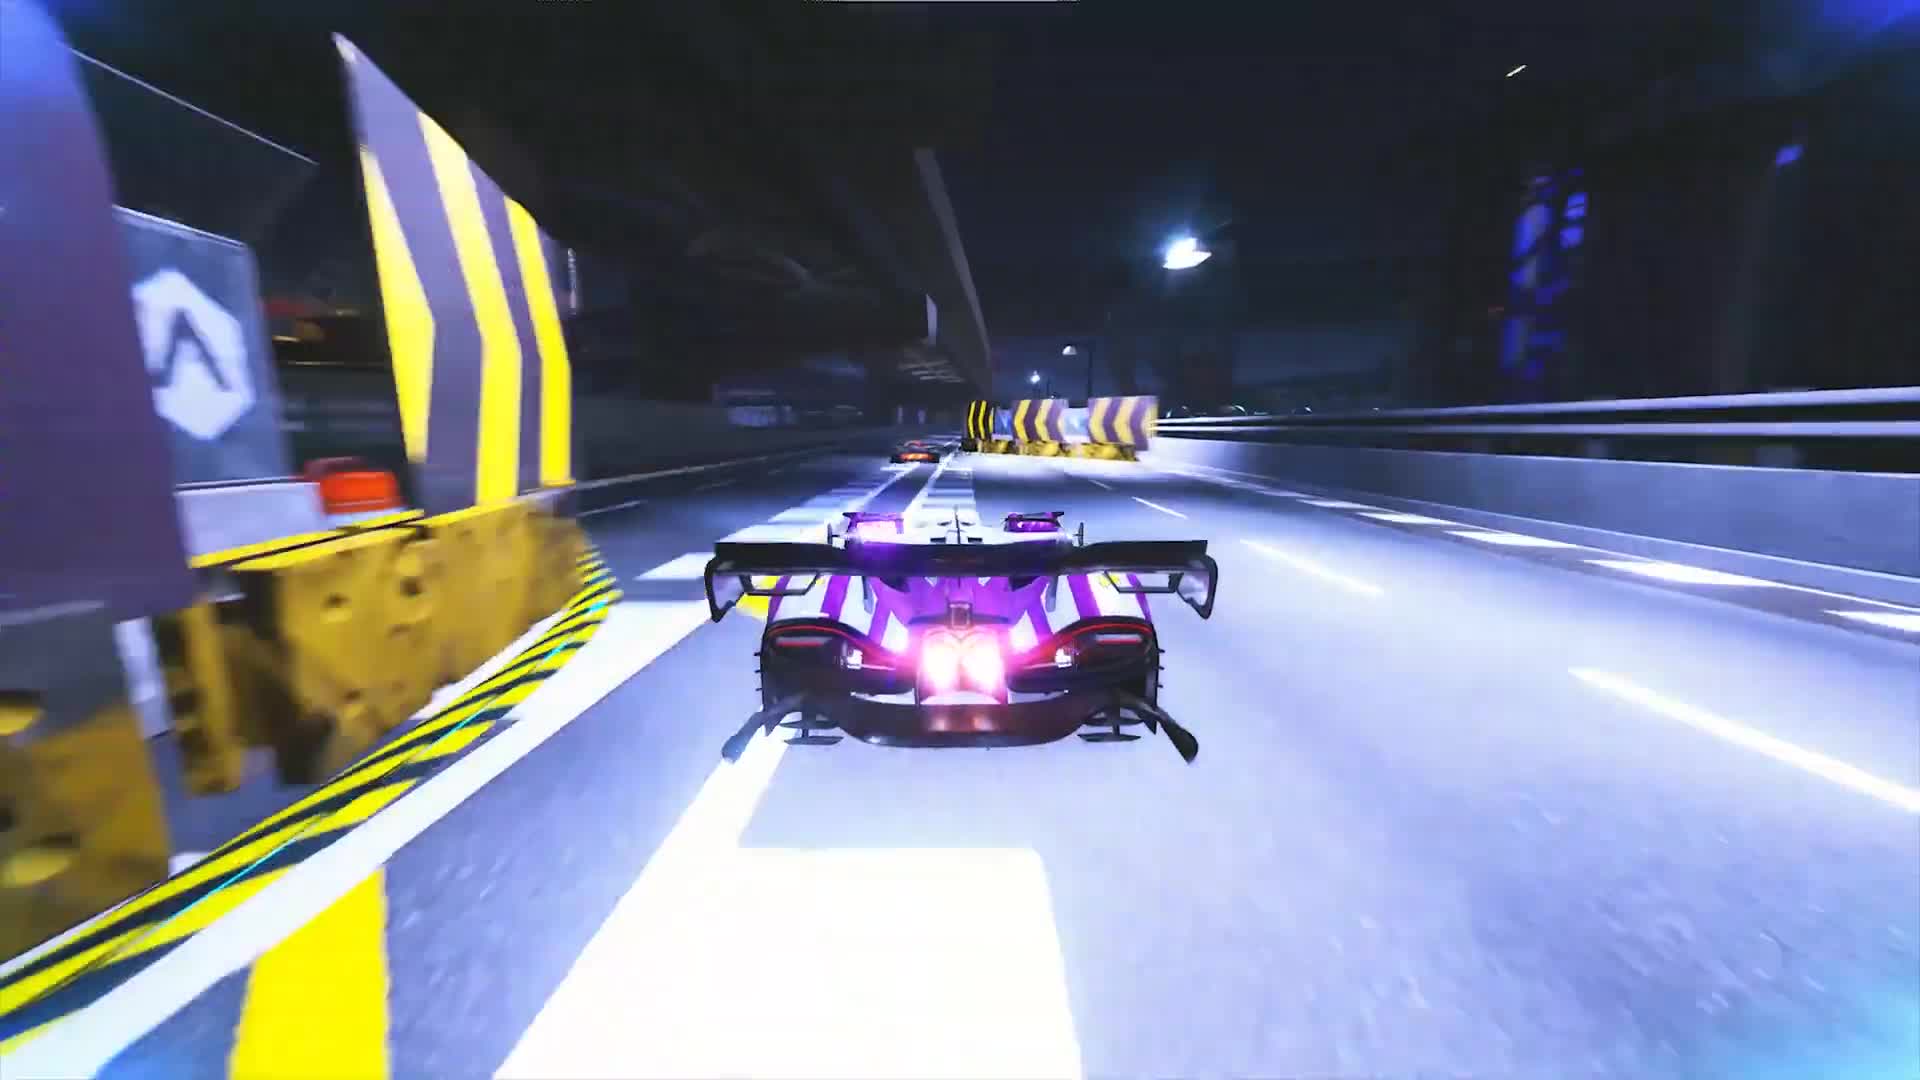 Xenon Racer - Launch Trailer